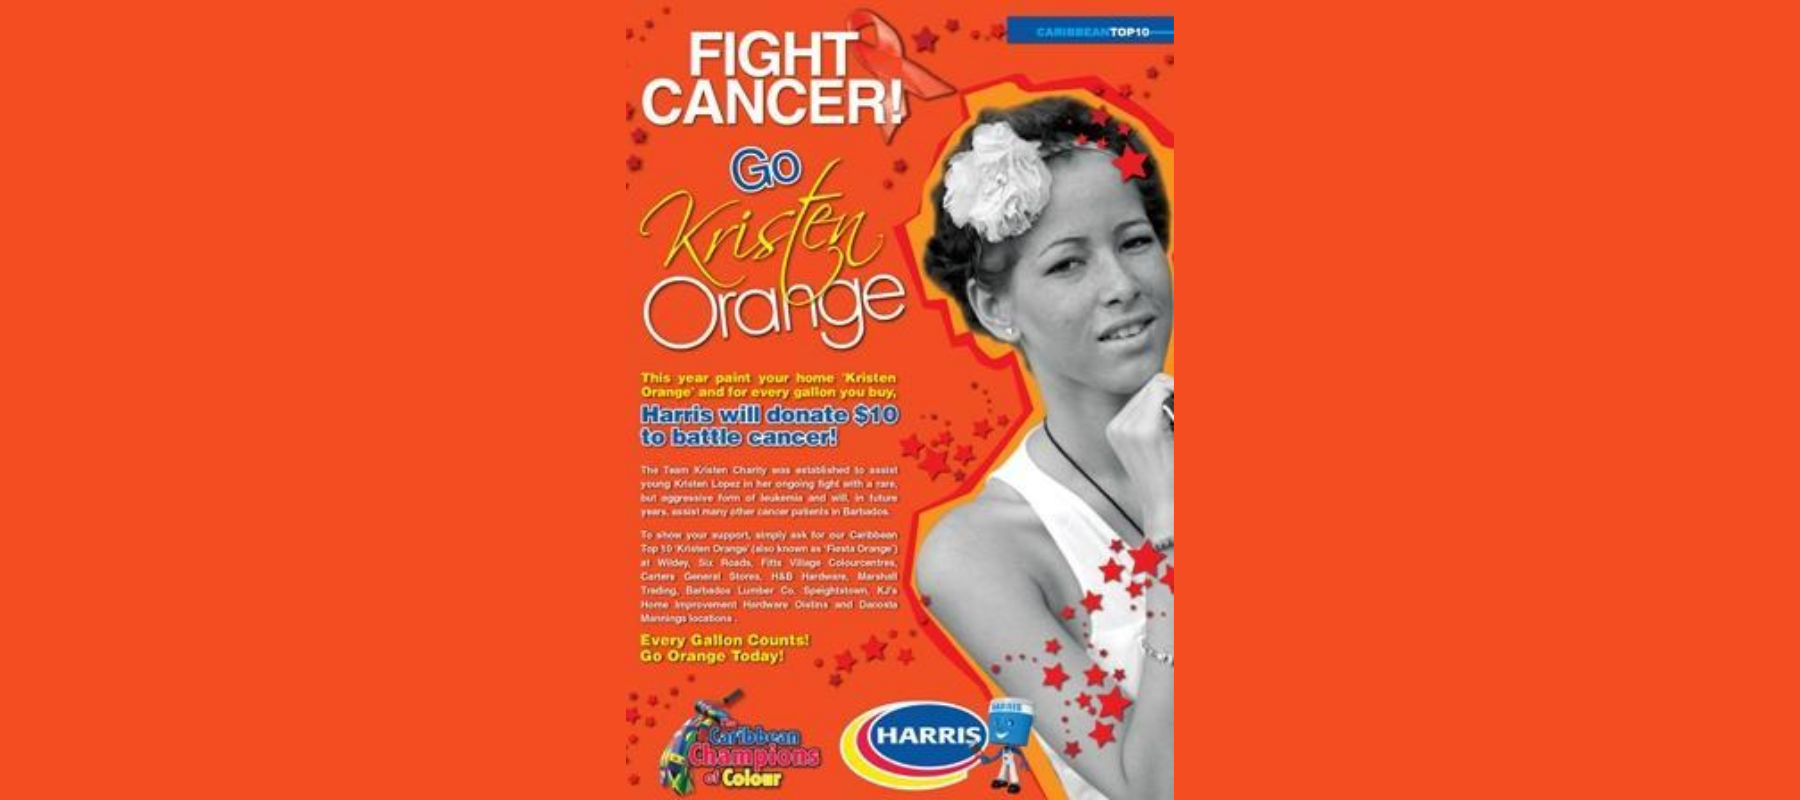 Fight Cancer! Go 'Kristen Orange' Today!